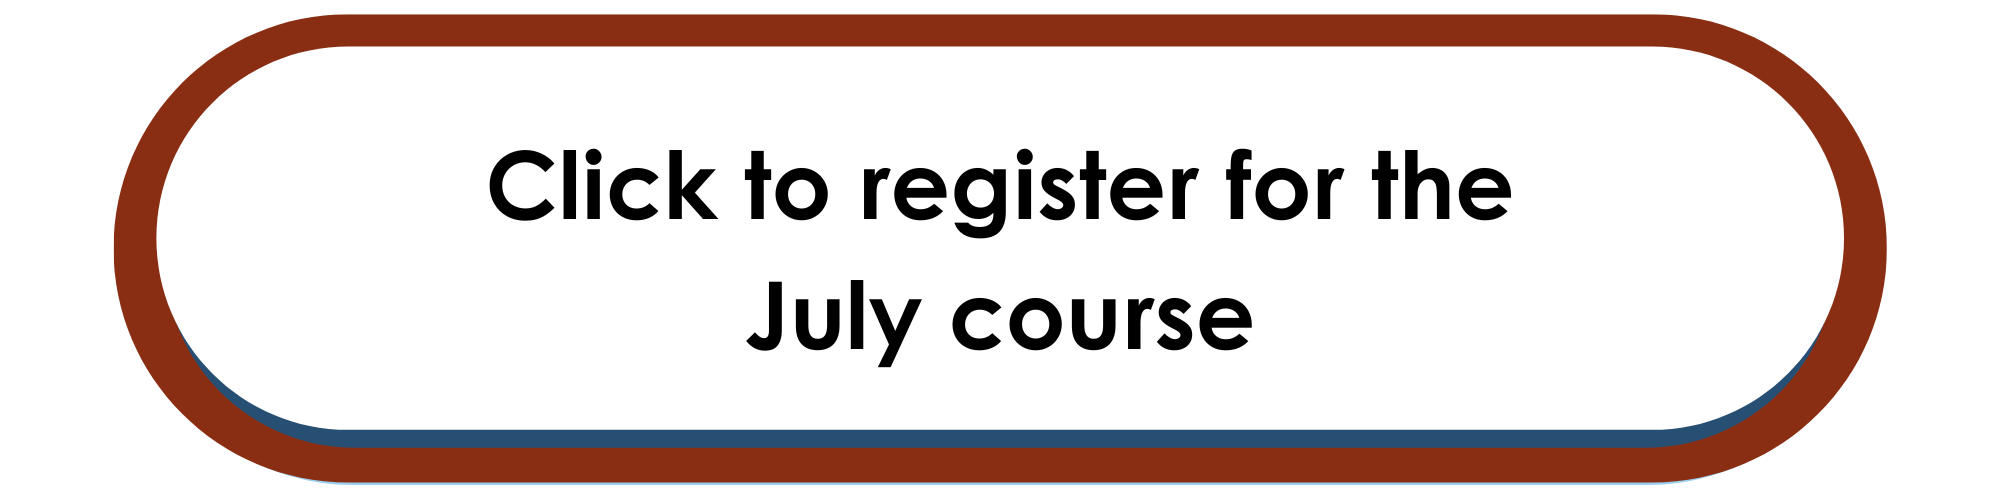 July Course Registration Link